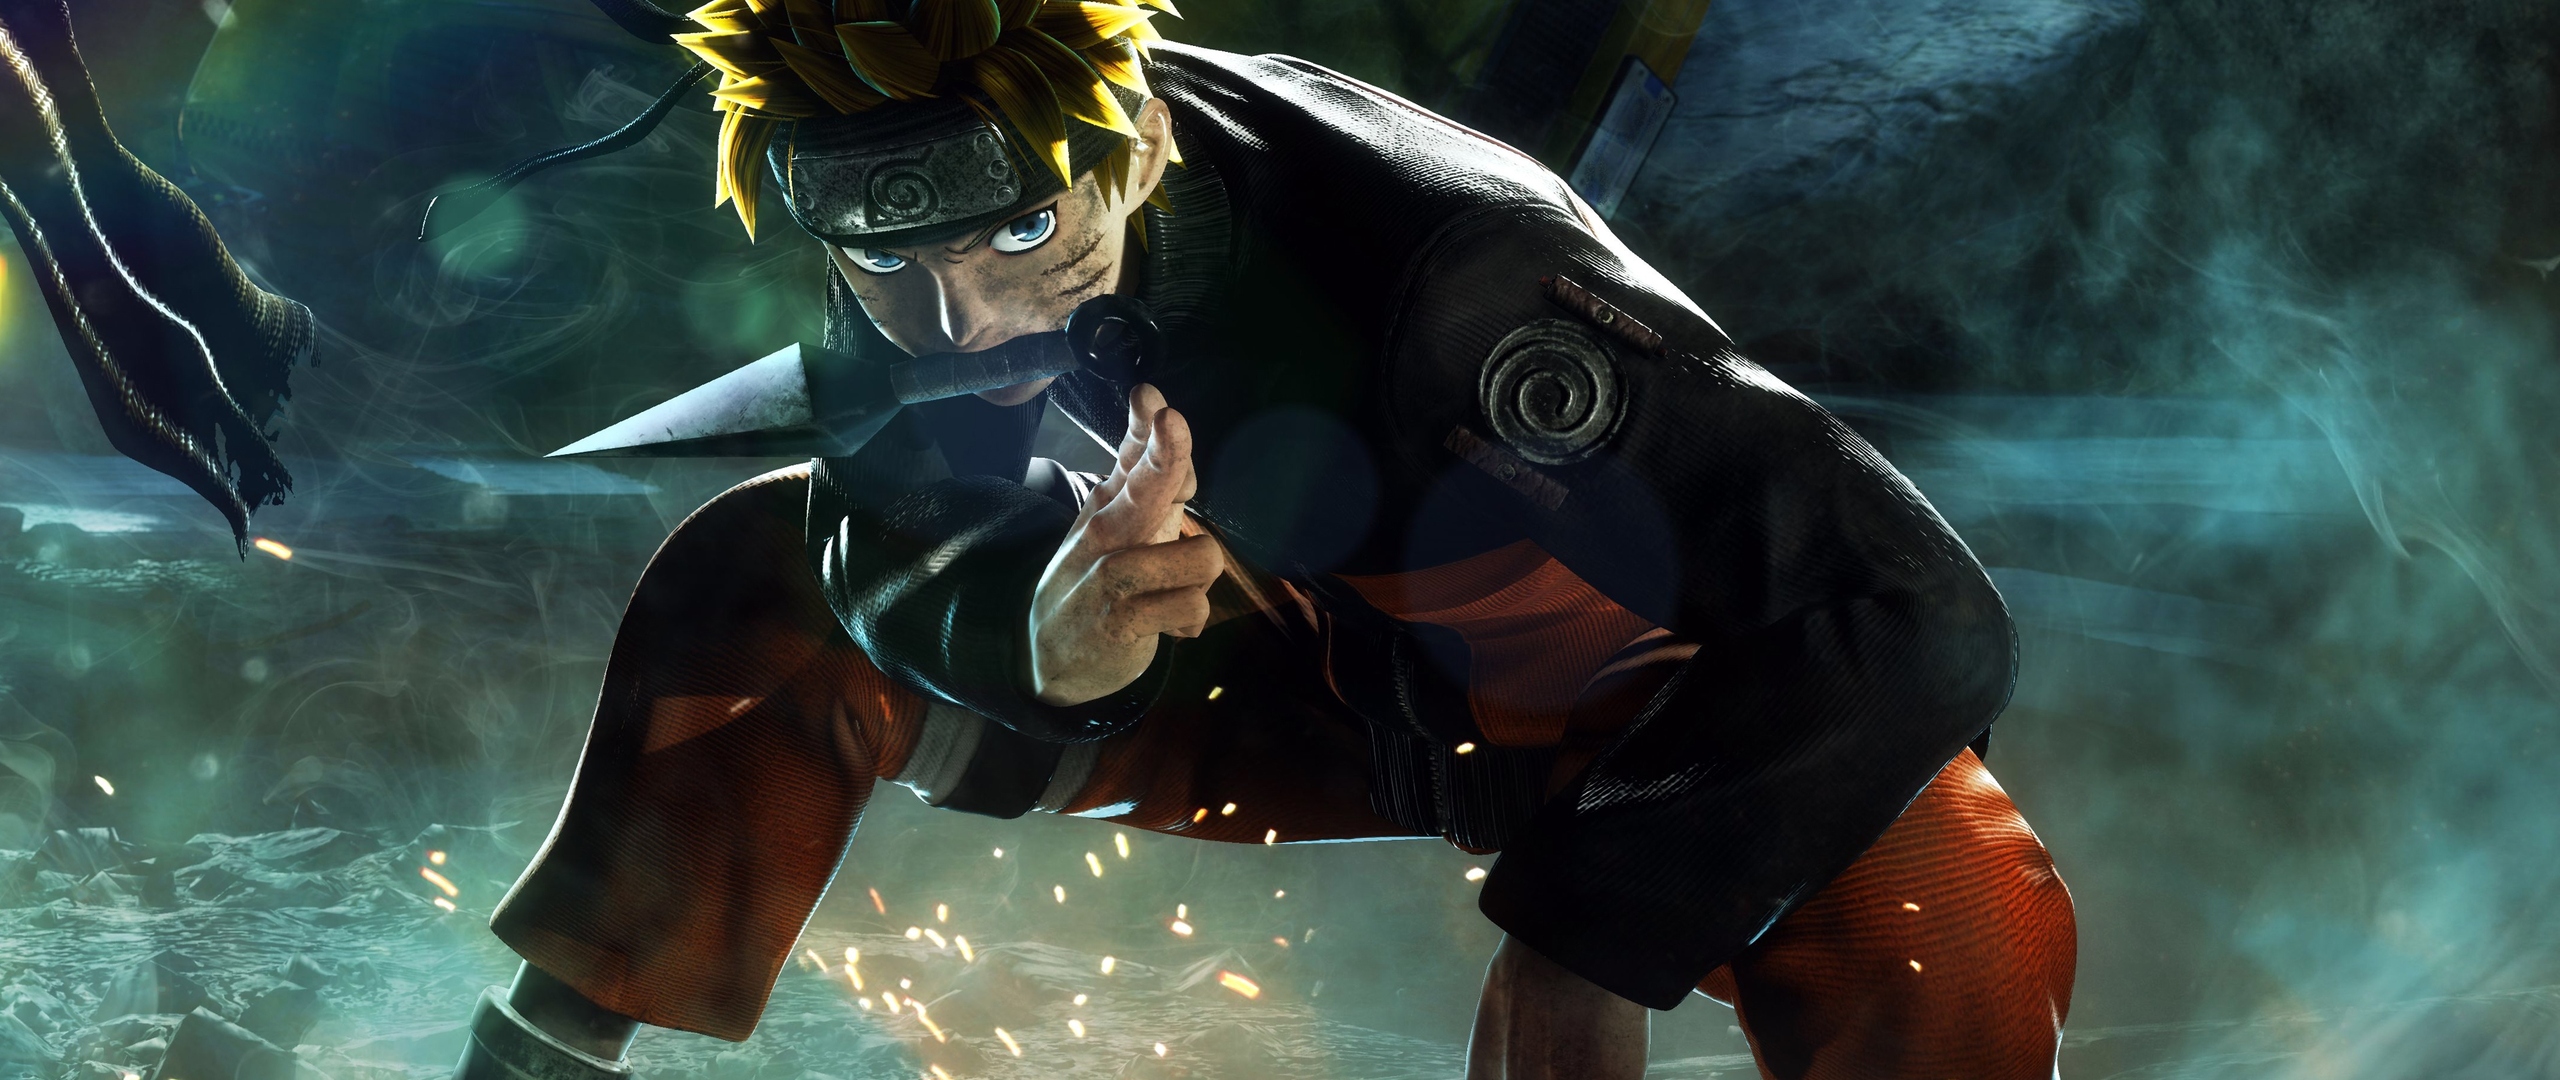 Cùng trải nghiệm Jump Force Naruto, một tựa game chiến đấu hành động với phần diễn xuất đẹp mắt của những nhân vật yêu thích trong Anime. Trong trò chơi này, Naruto Uzumaki và các bạn của anh ta sẽ tham gia vào cuộc chiến để bảo vệ thế giới khỏi ác quỷ. Sẵn sàng trở thành chiến binh mạnh nhất?